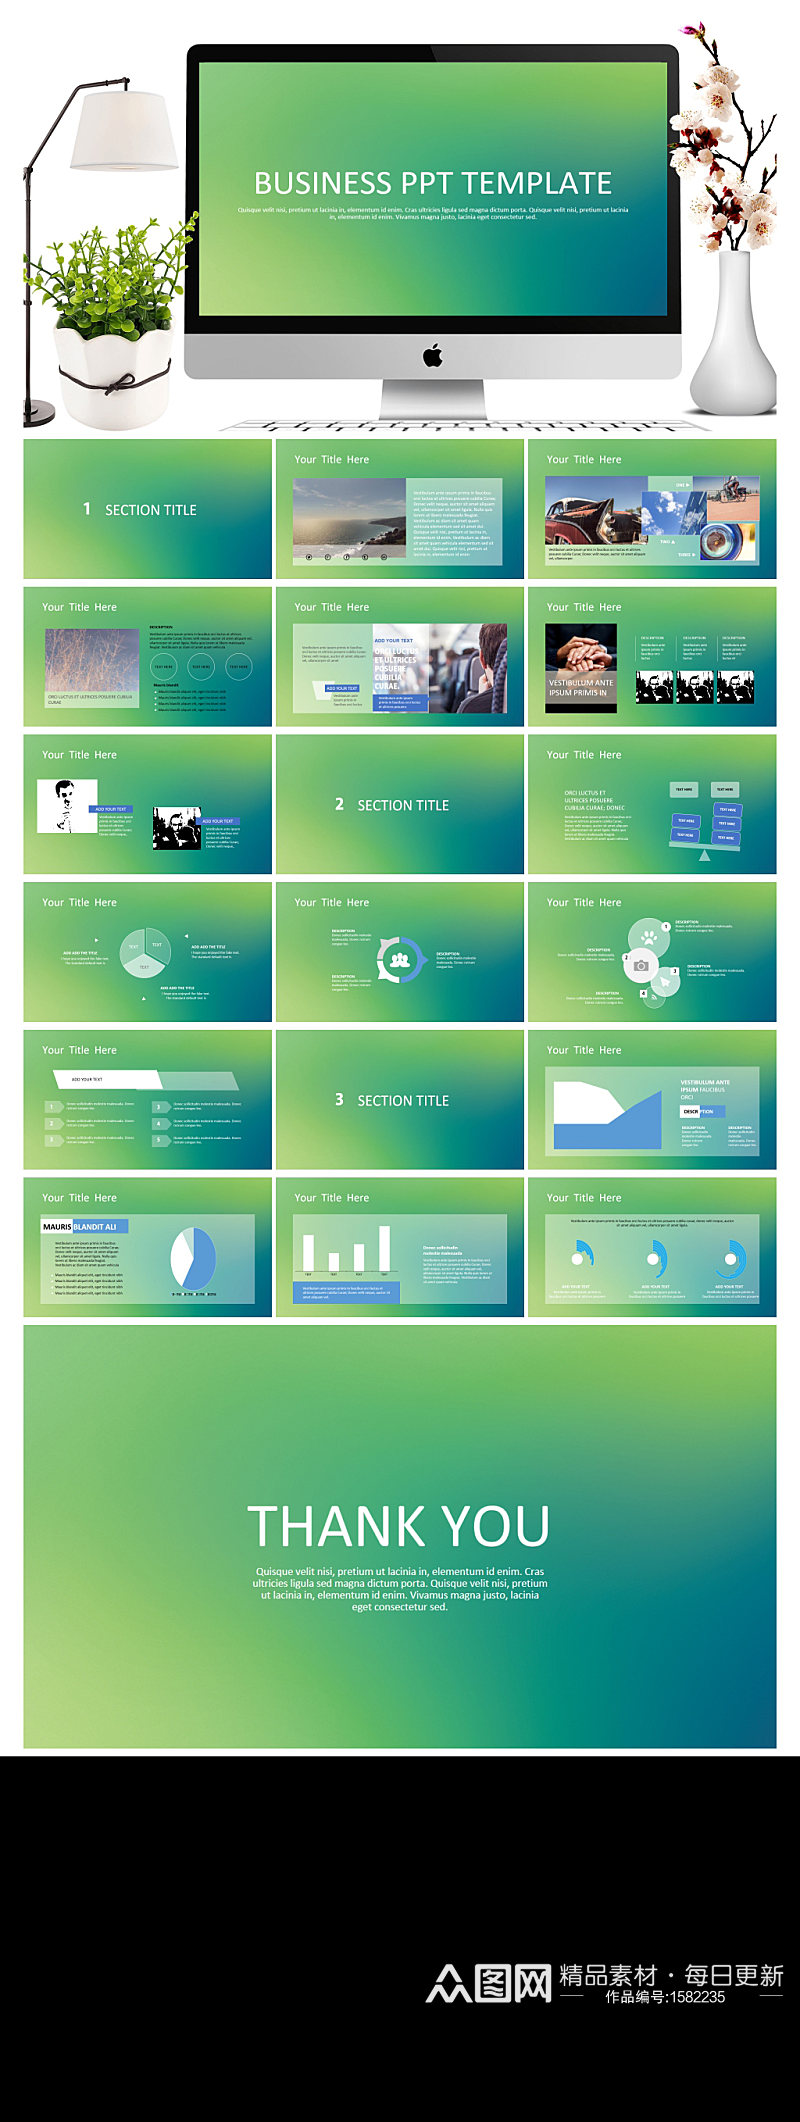 简约绿色IOS风PowerPoint模板素材